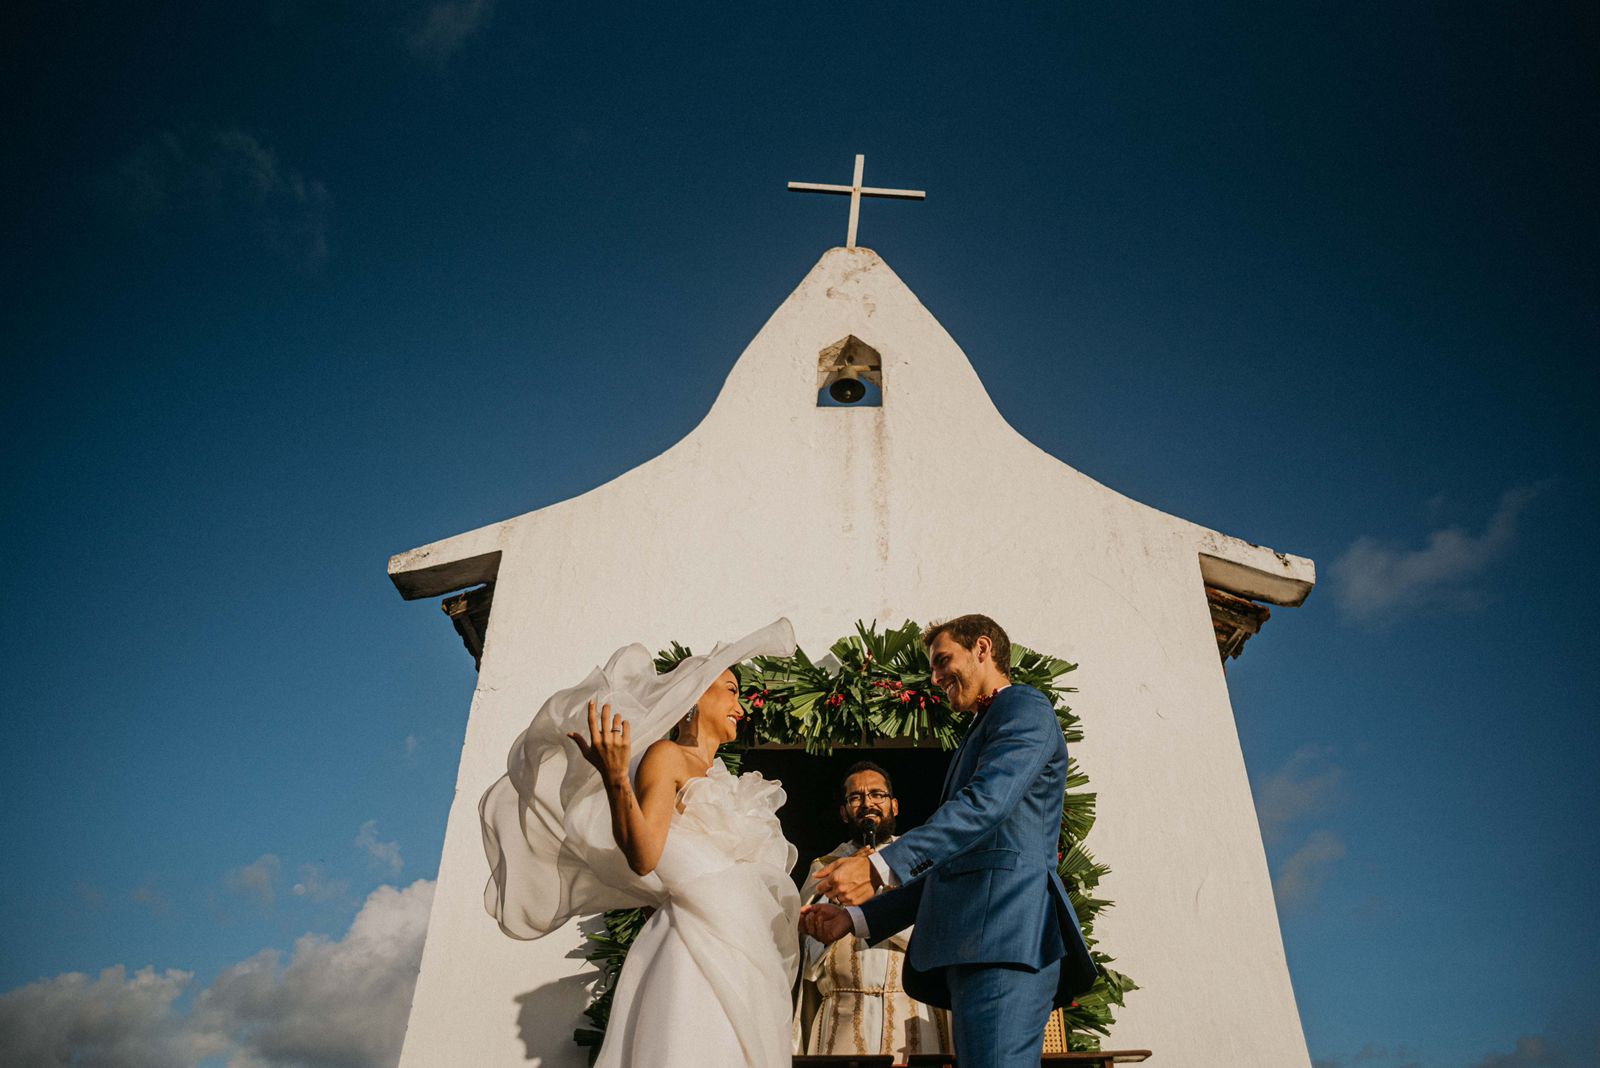 O destination wedding reuniu a família e amigos dos noivos em final de semana no arquipélago de Pernambuco